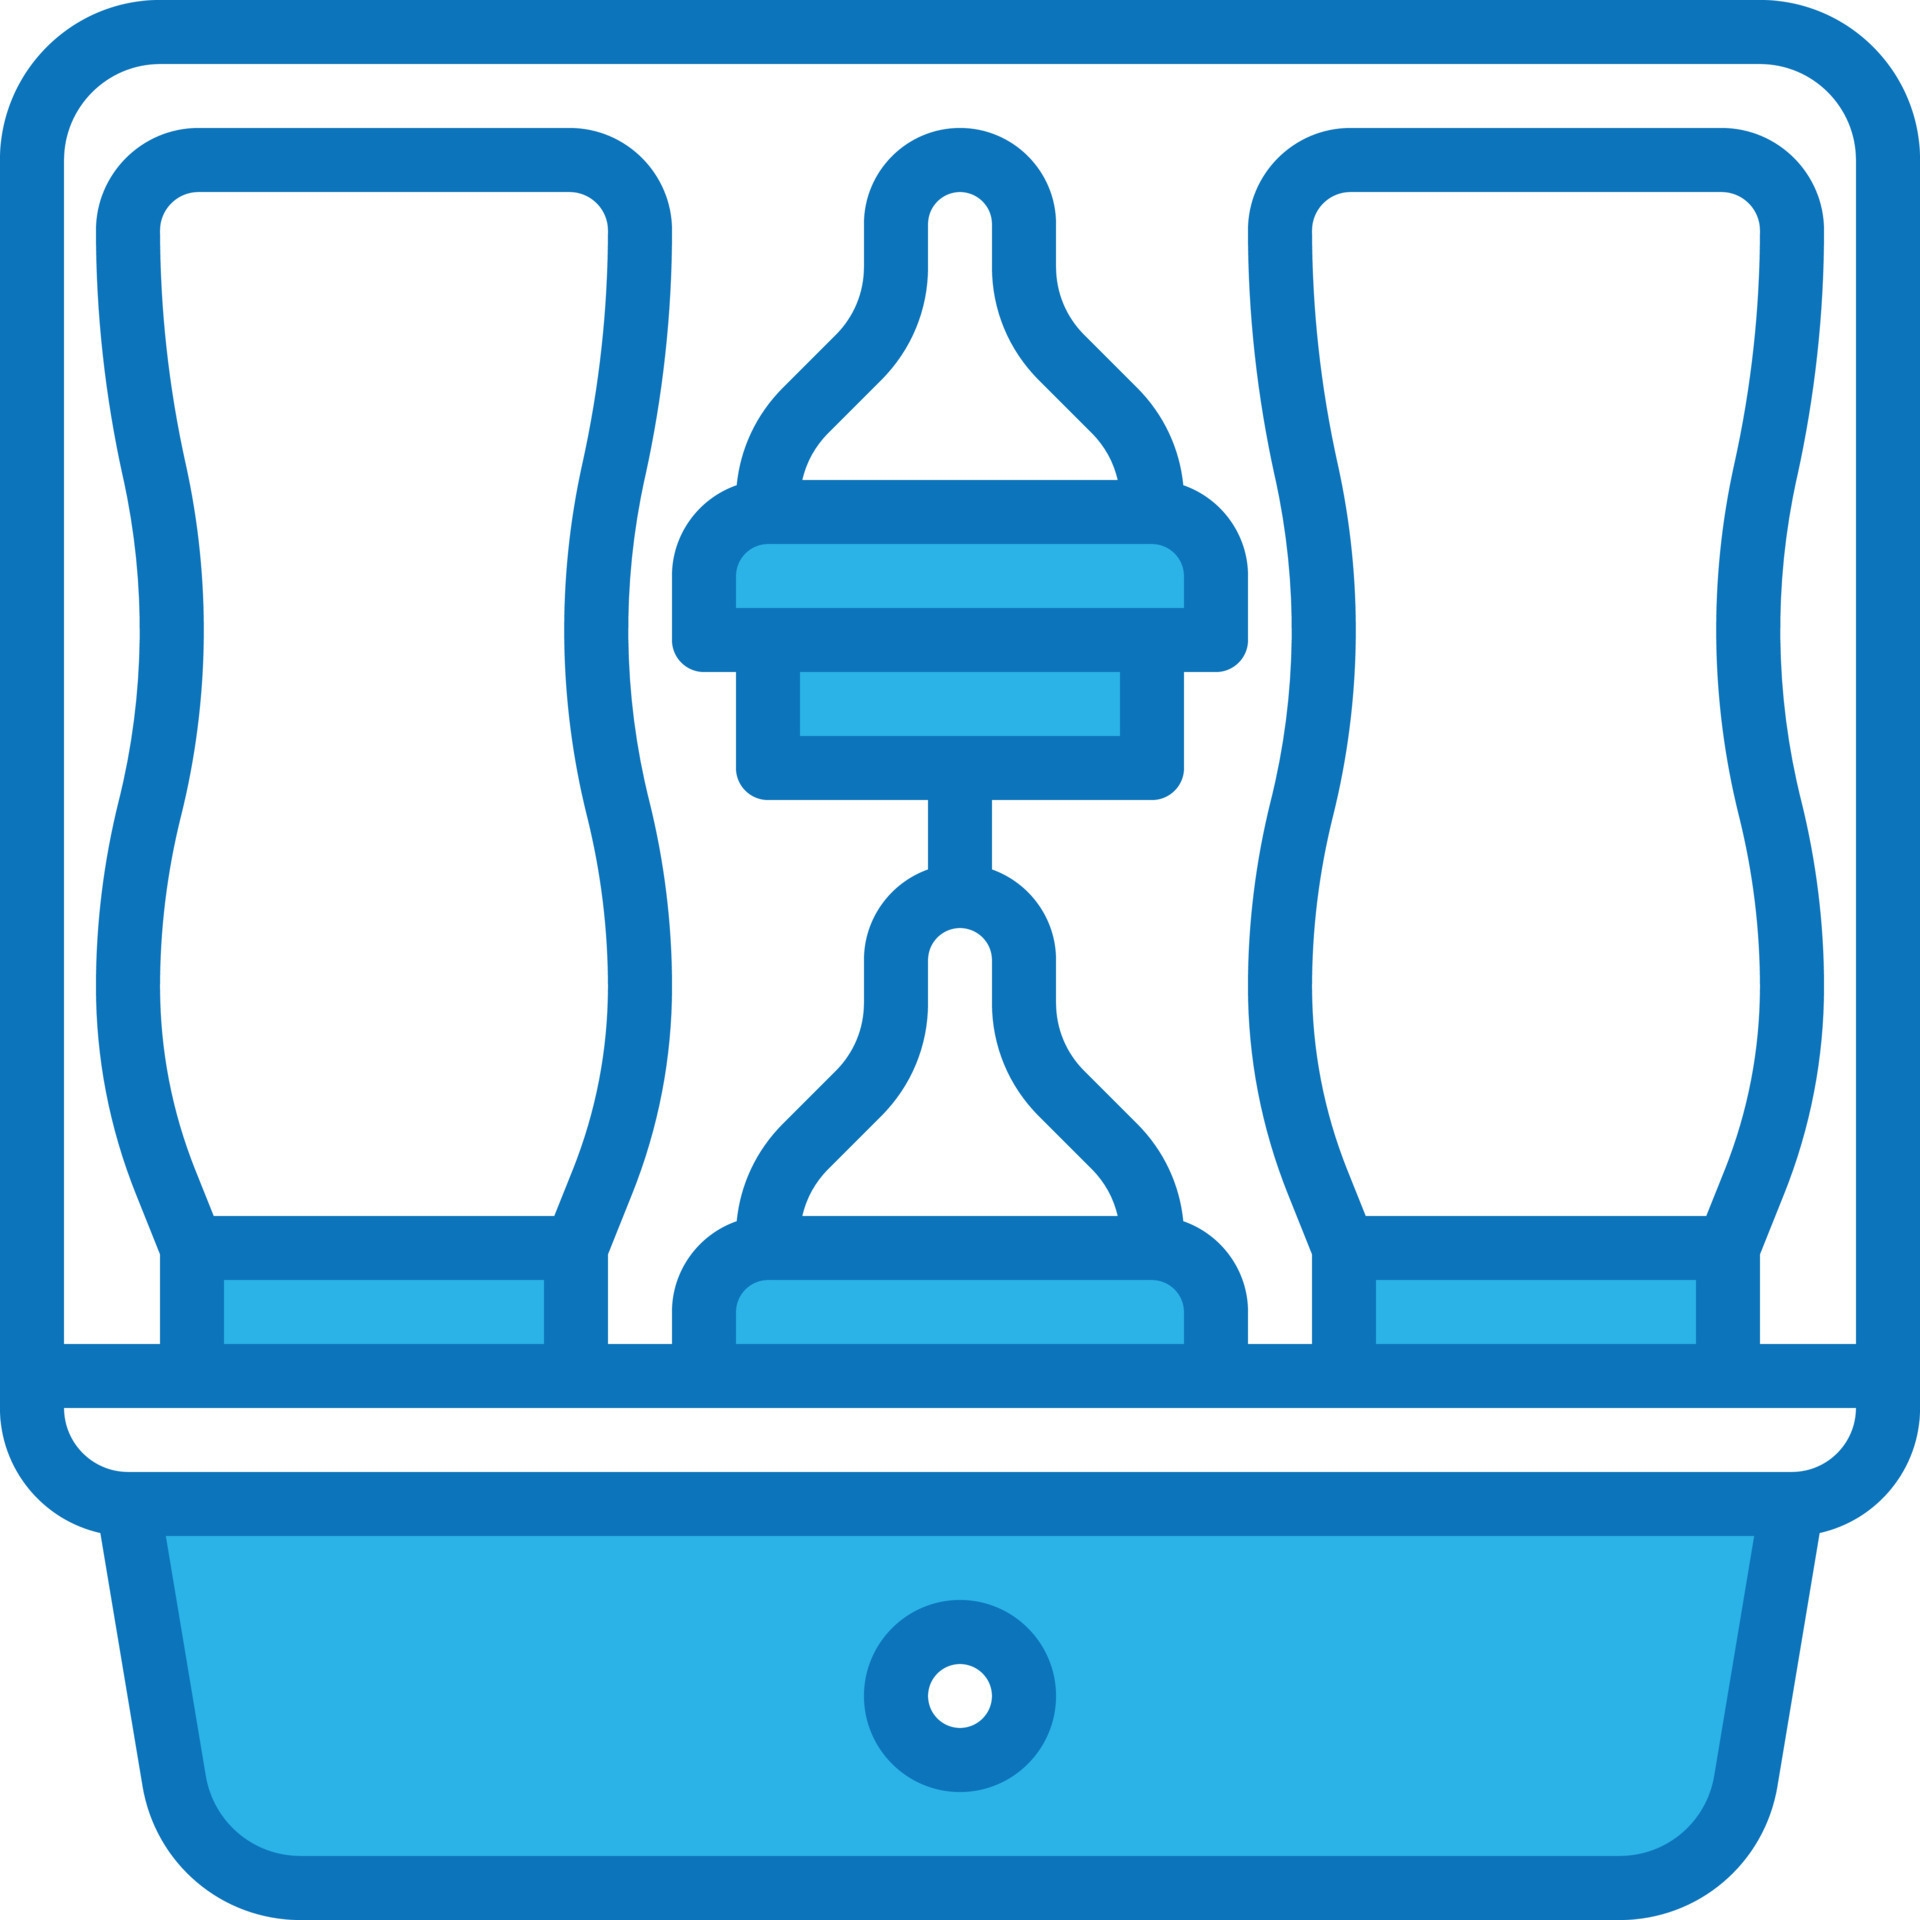 acessórios para bebês com mamadeira a vapor esterilizador - ícone azul  14362520 Vetor no Vecteezy